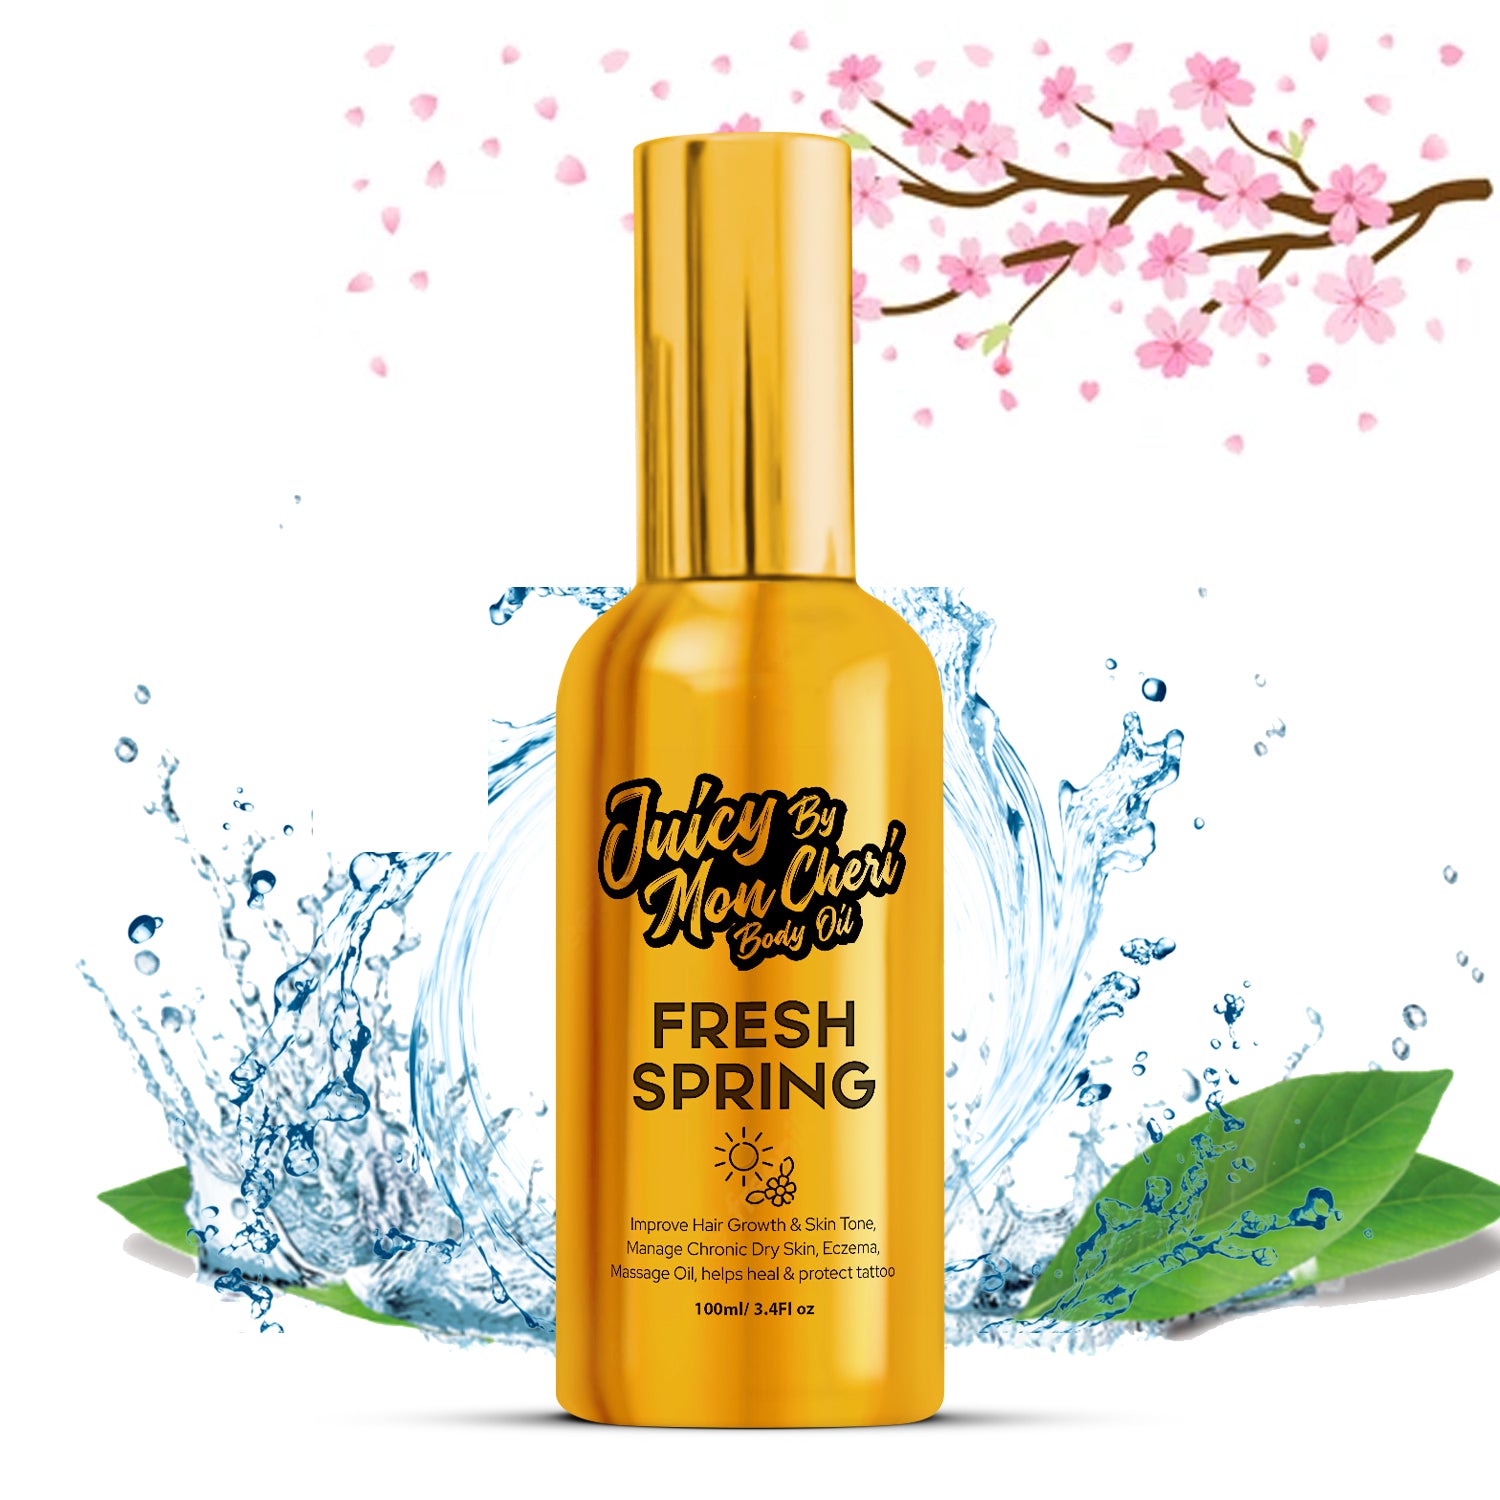 Juicy By Mon Cheri's Revitalizing Fresh Springs Body Oil